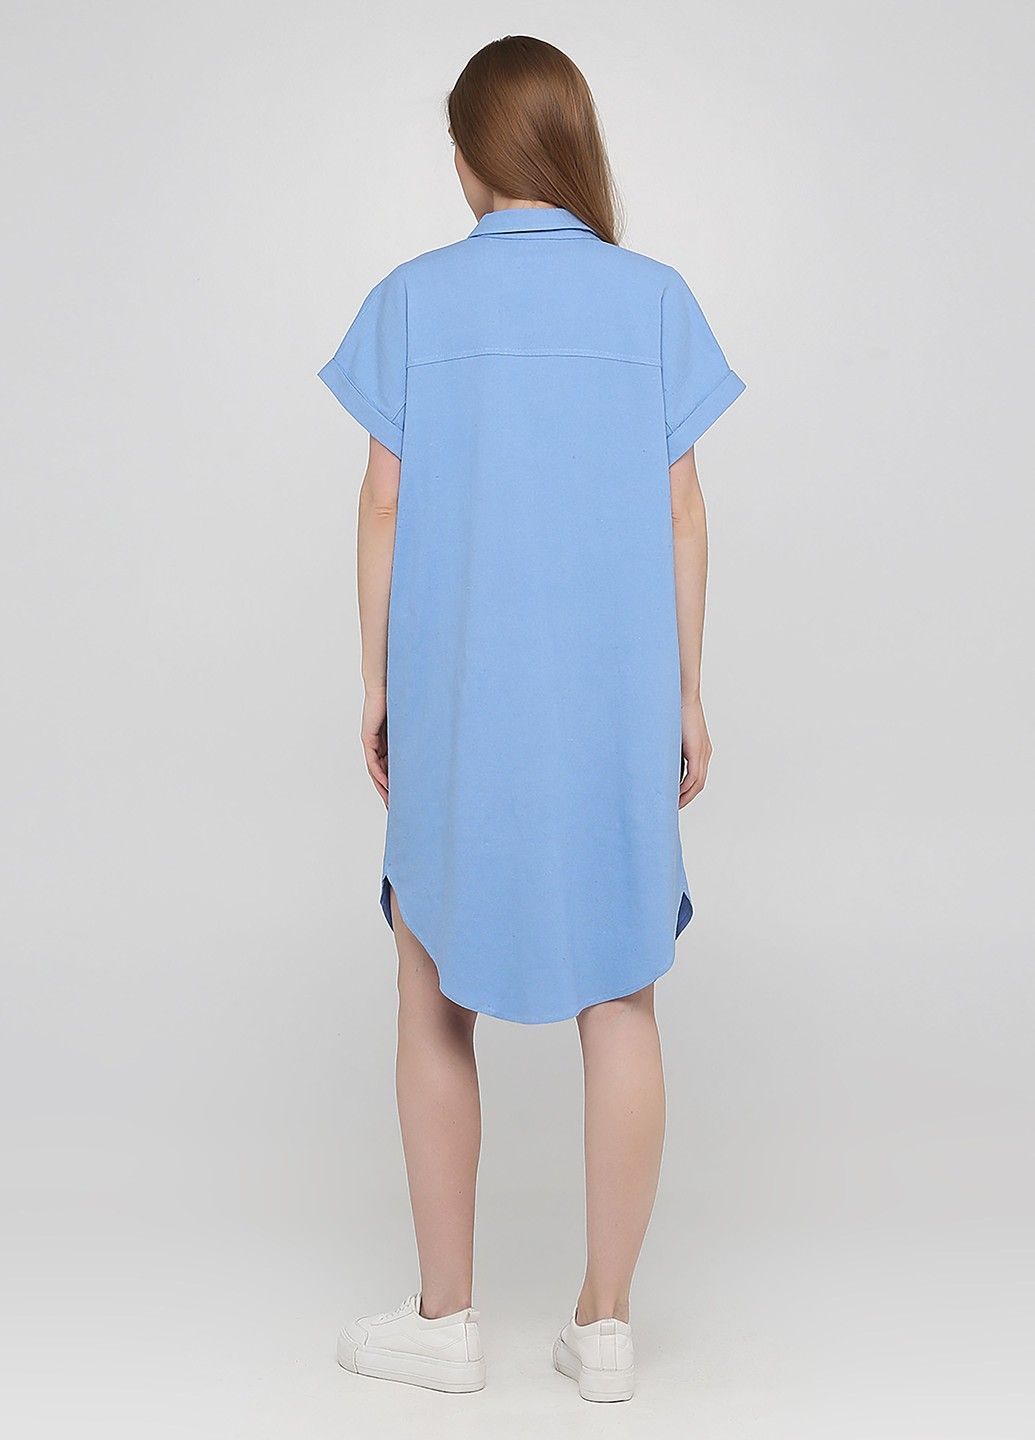 Купити Льняна сукня-сорочка Merlini Орлеан 700000003 - Блакитний, 42-44 в інтернет-магазині